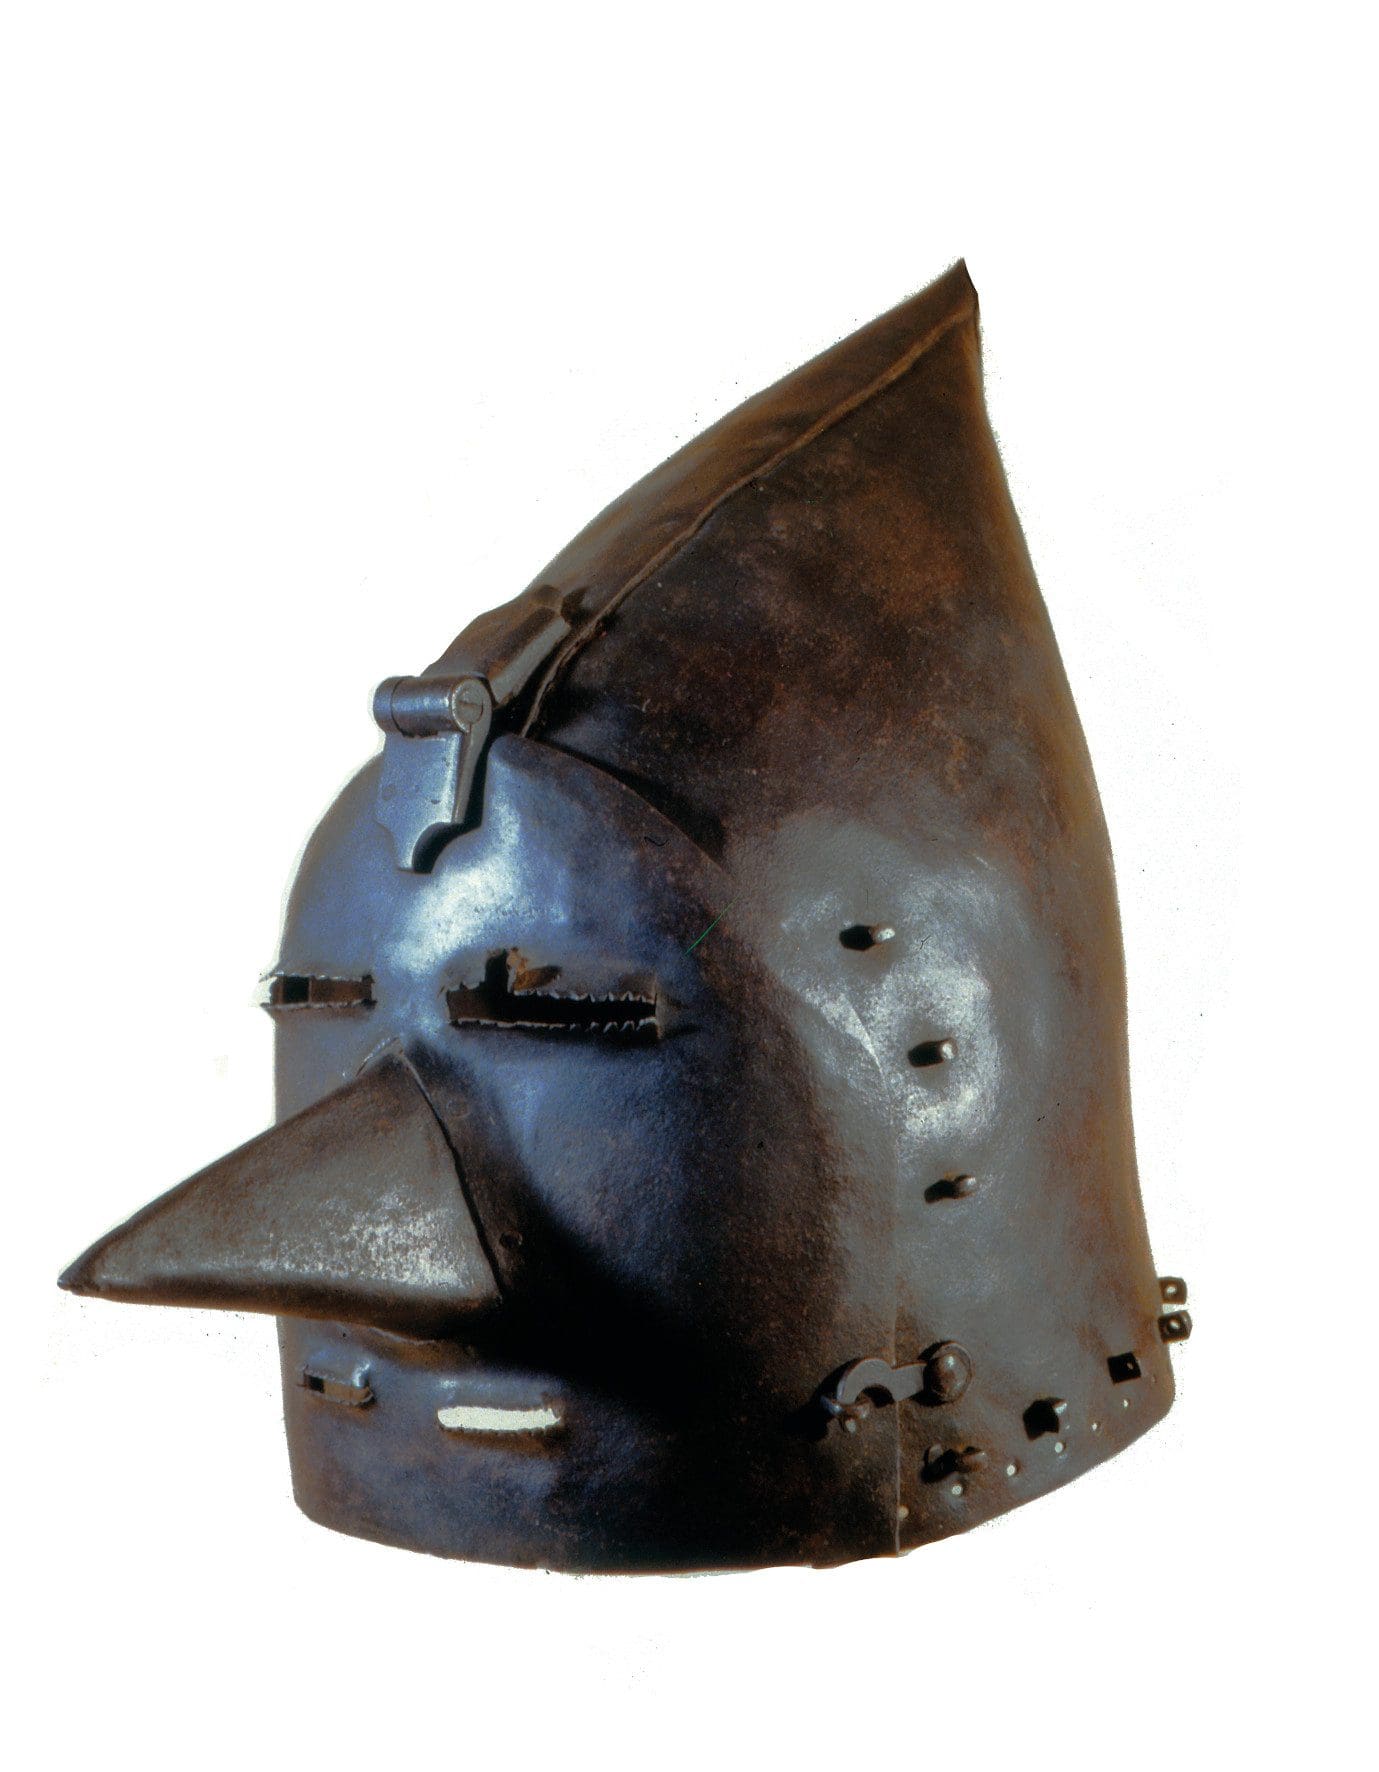 In Arnsberg ausgestellt: eine Henkersmaske - Leihgabe aus dem Mittelalterlichen Kriminalmuseum Rothenburg ob der Tauber